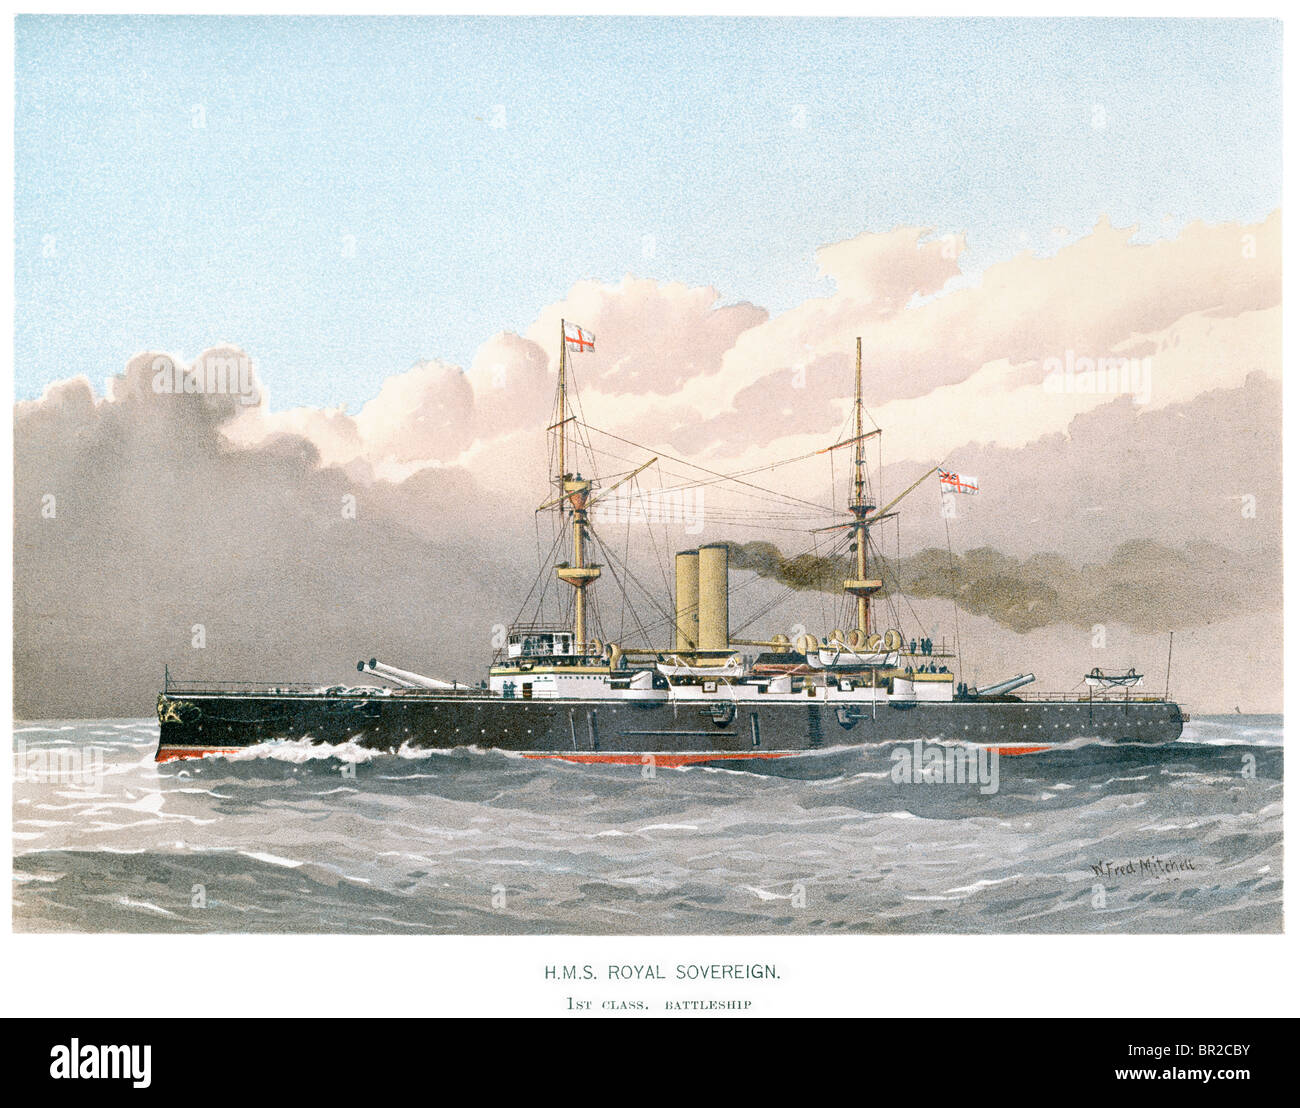 Le HMS Royal Sovereign était un cuirassé de la Royal Navy, et le plus grand navire de guerre dans le monde à l'époque Banque D'Images